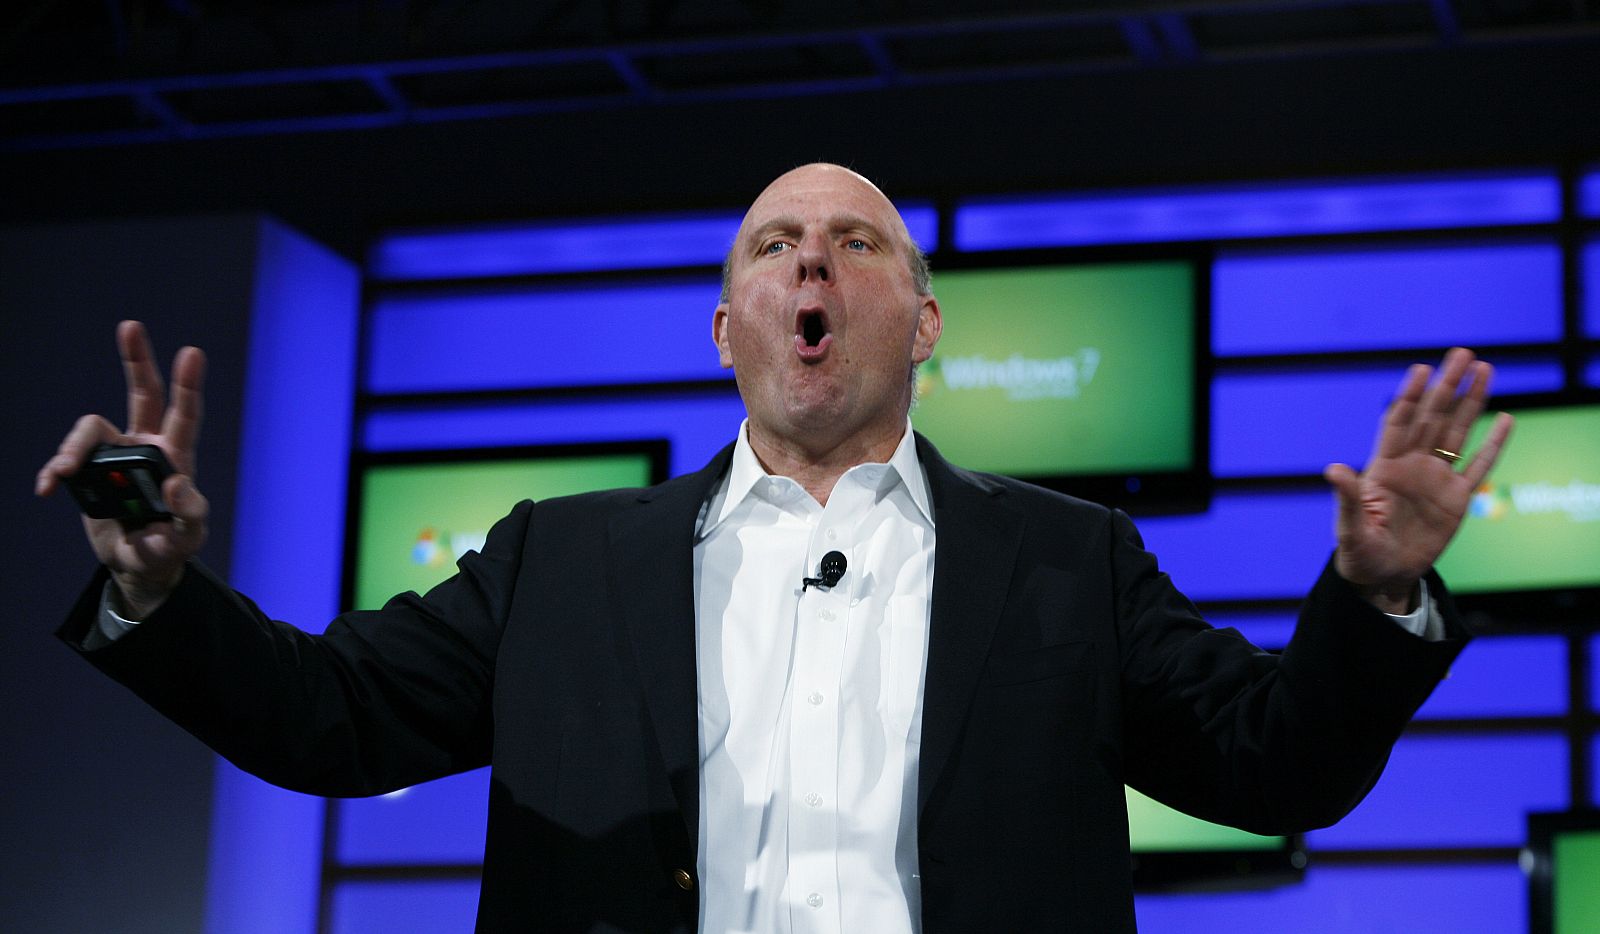 El consejero delegado de Microsoft, Steve Ballmer, durante una de las presentaciones de su compañía (Archivo)